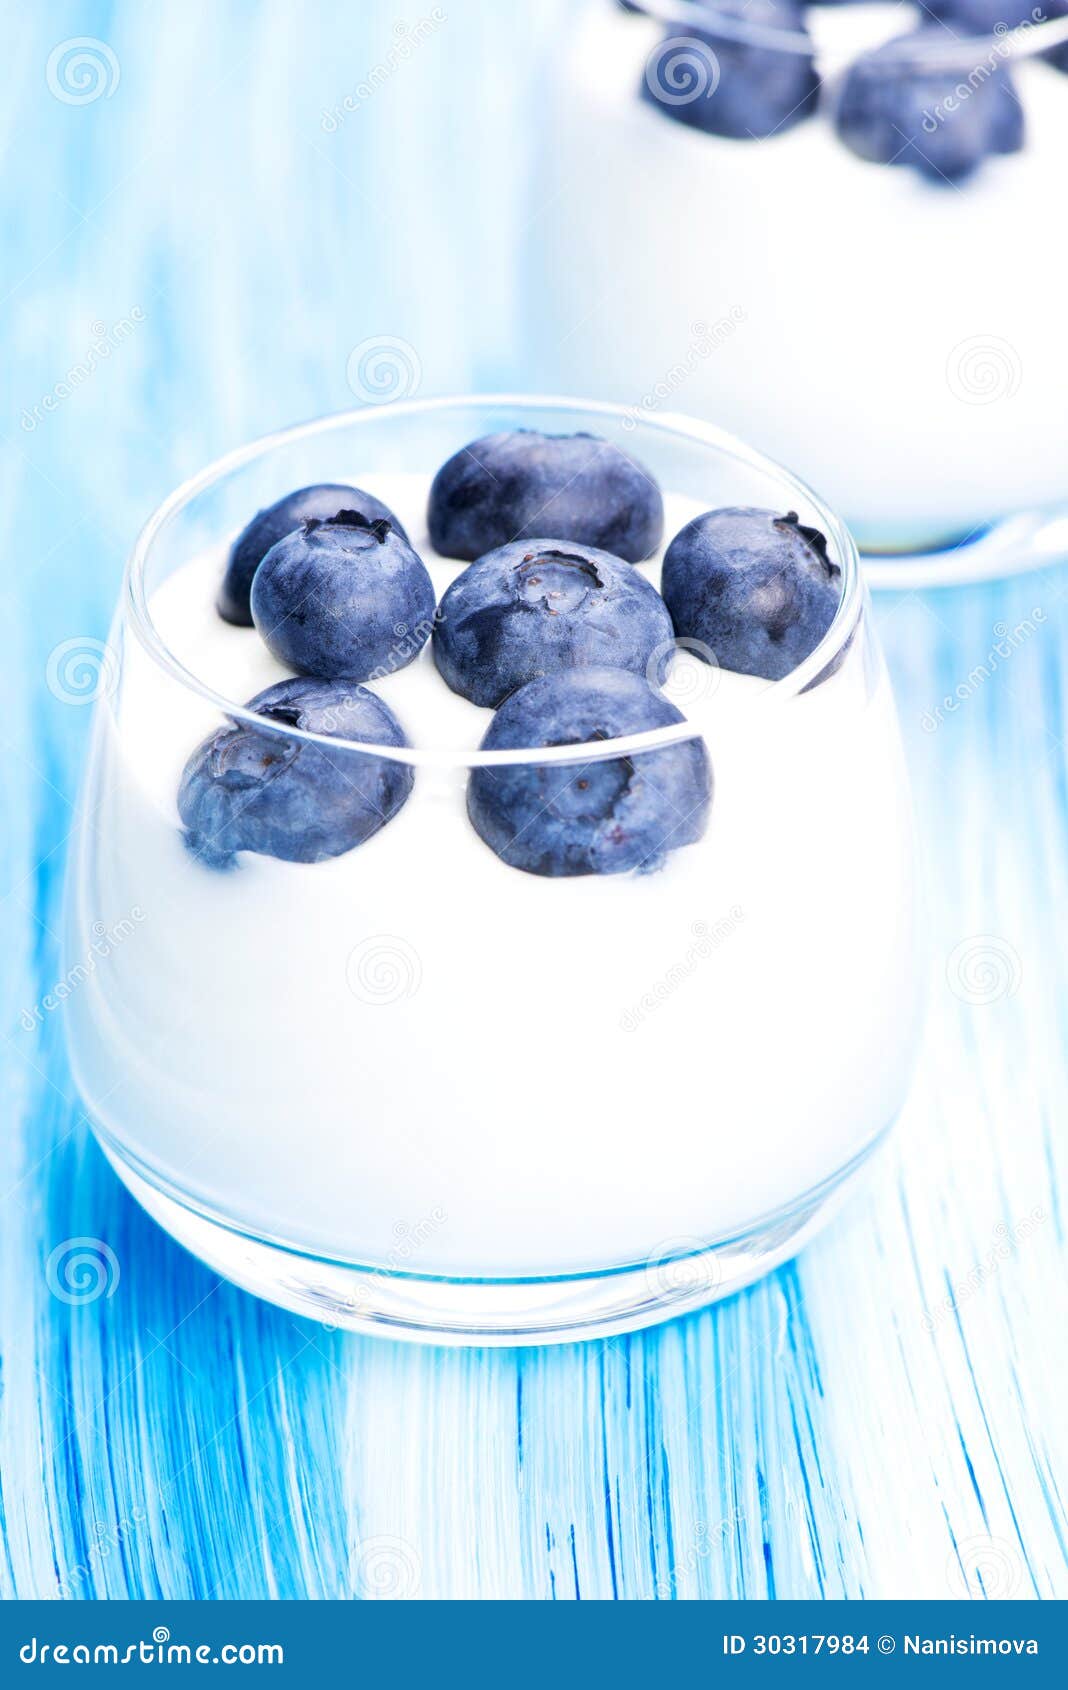 蓝莓酸奶素材-蓝莓酸奶图片-蓝莓酸奶素材图片下载-觅知网